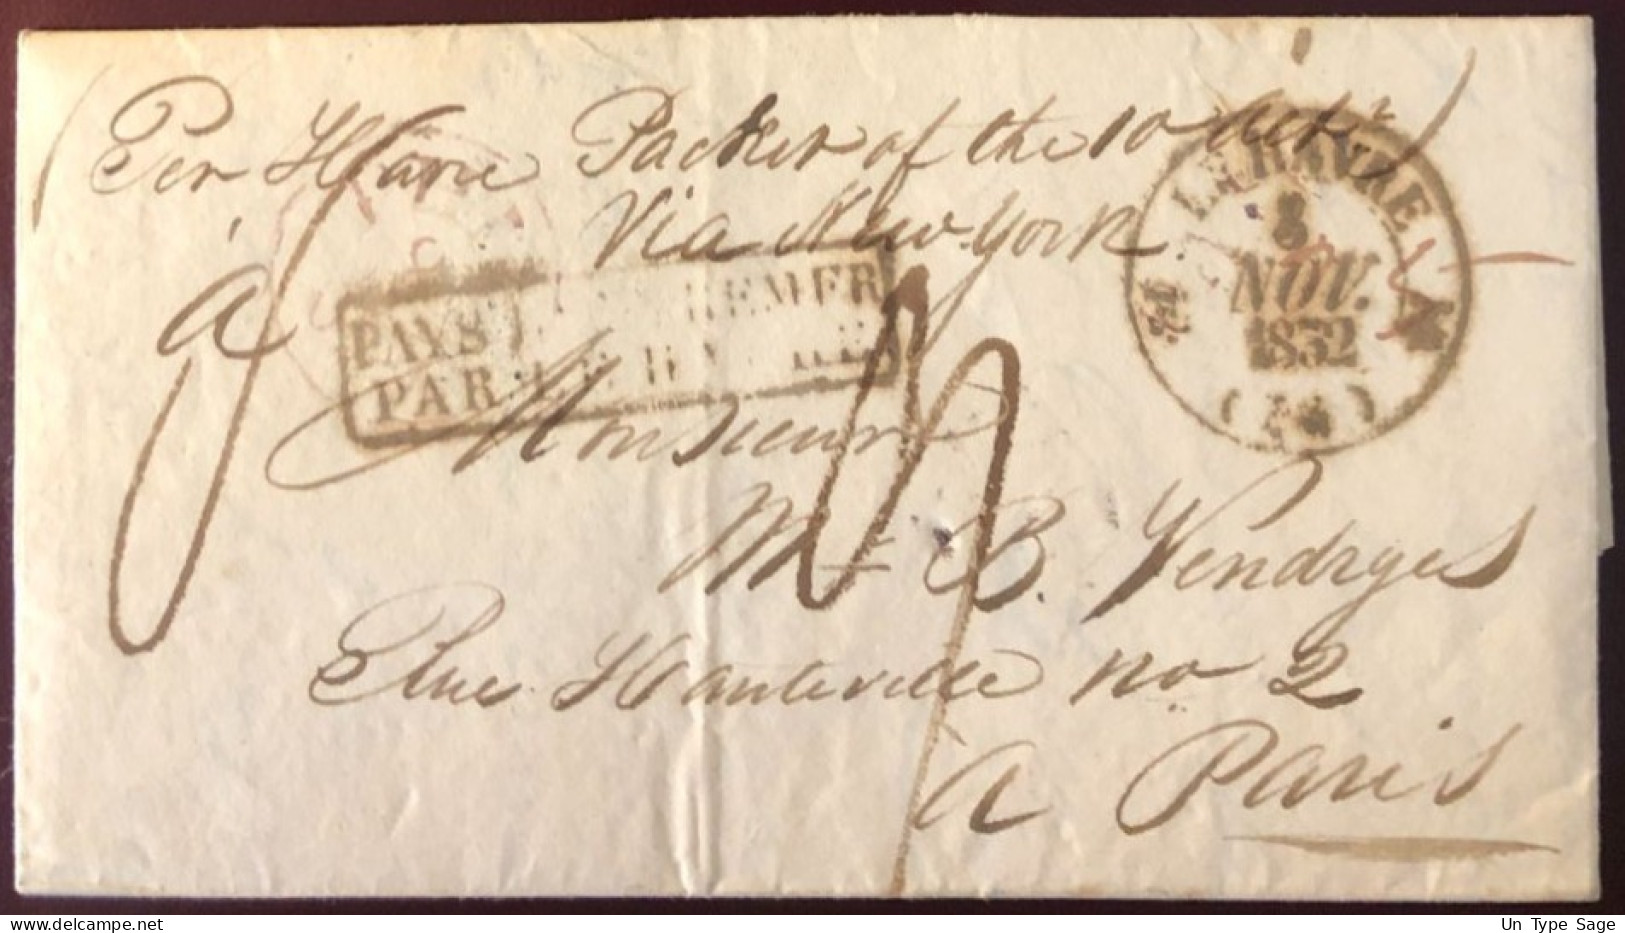 Etats-Unis, Lettre De Philadelphie 8.10.1832 Pour Paris - Griffe PAYS D'OUTREMER PAR LE HAVRE - (B1400) - Marcofilia